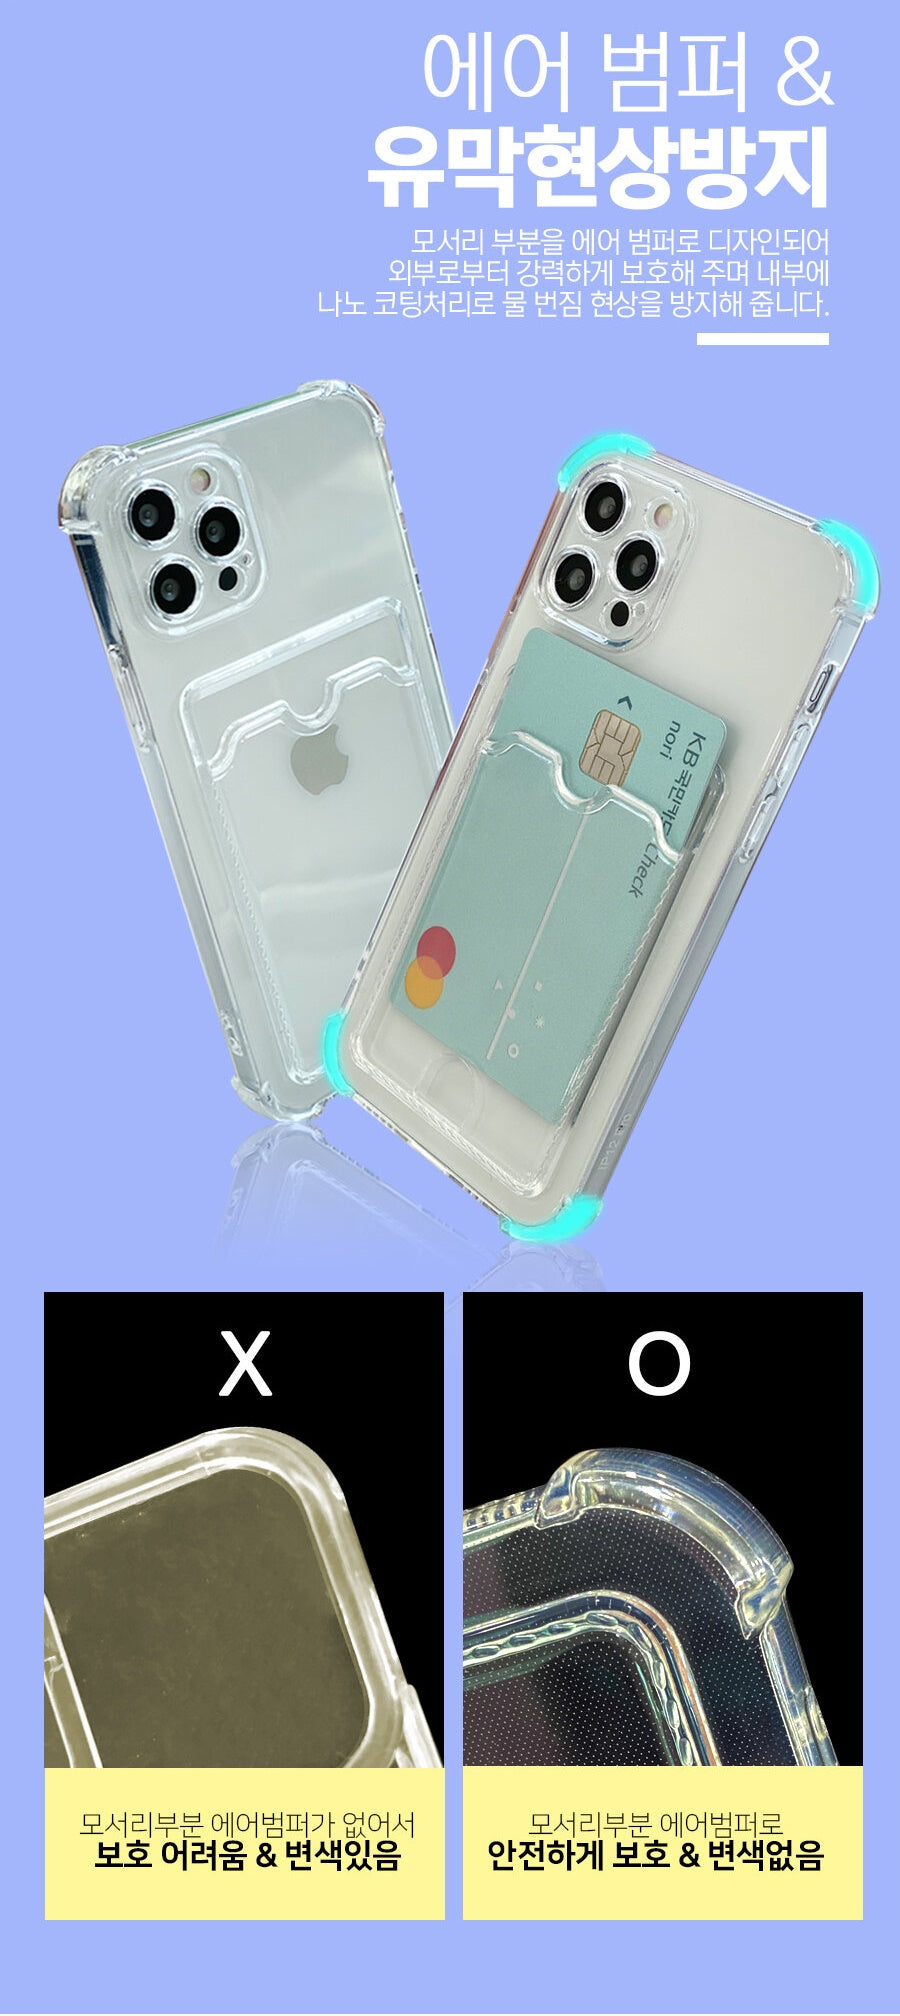 透明 電話殼 插卡 放卡 八達通 信用卡 手機套